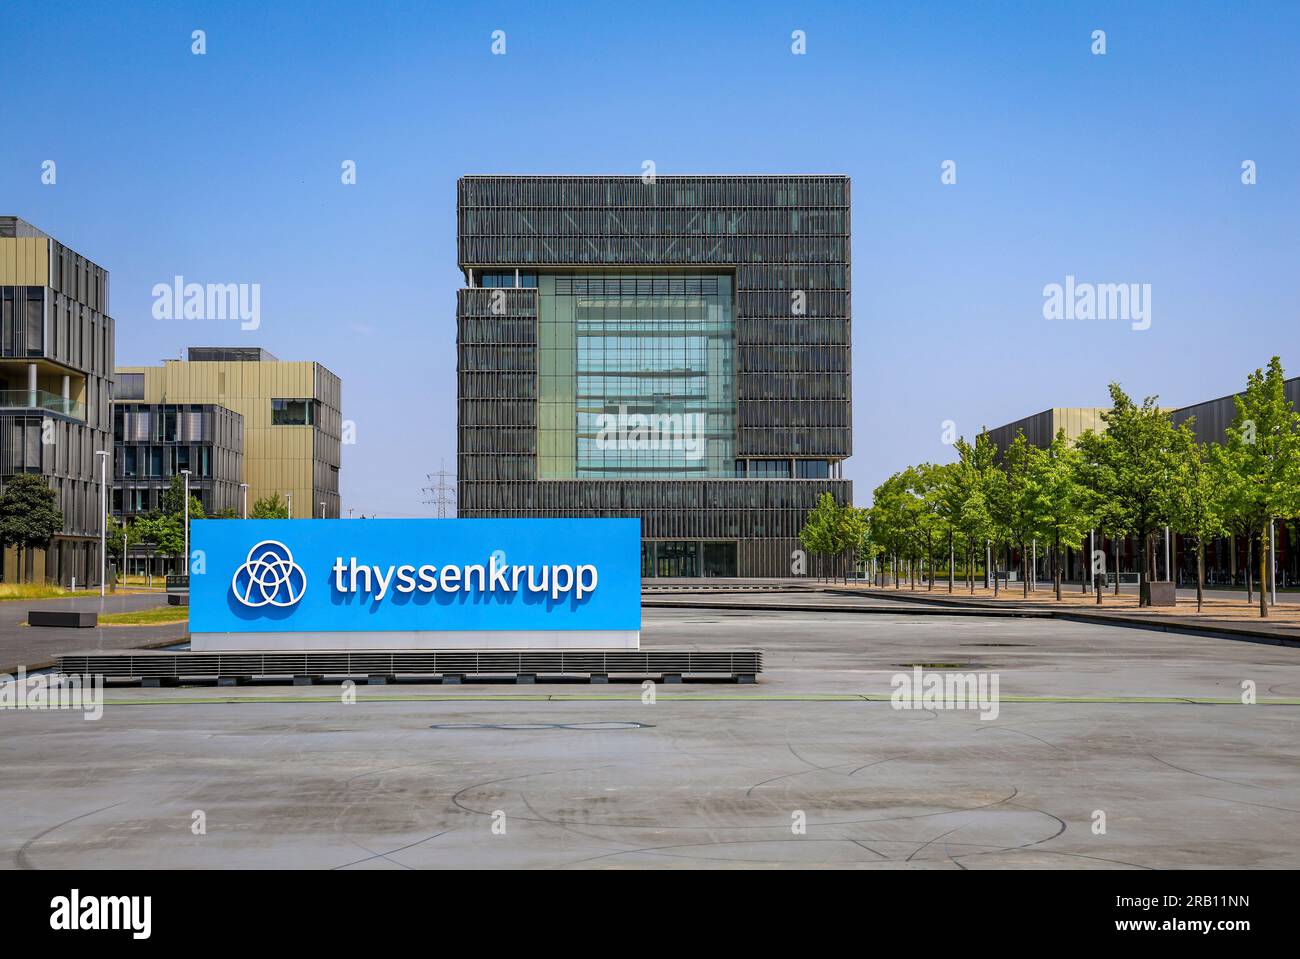 Essen, Renania settentrionale-Vestfalia, Germania - ThyssenKrupp, logo aziendale davanti alla sede centrale. thyssenkrupp AG è un gruppo industriale specializzato nella lavorazione dell'acciaio e il più grande produttore tedesco di acciaio Foto Stock